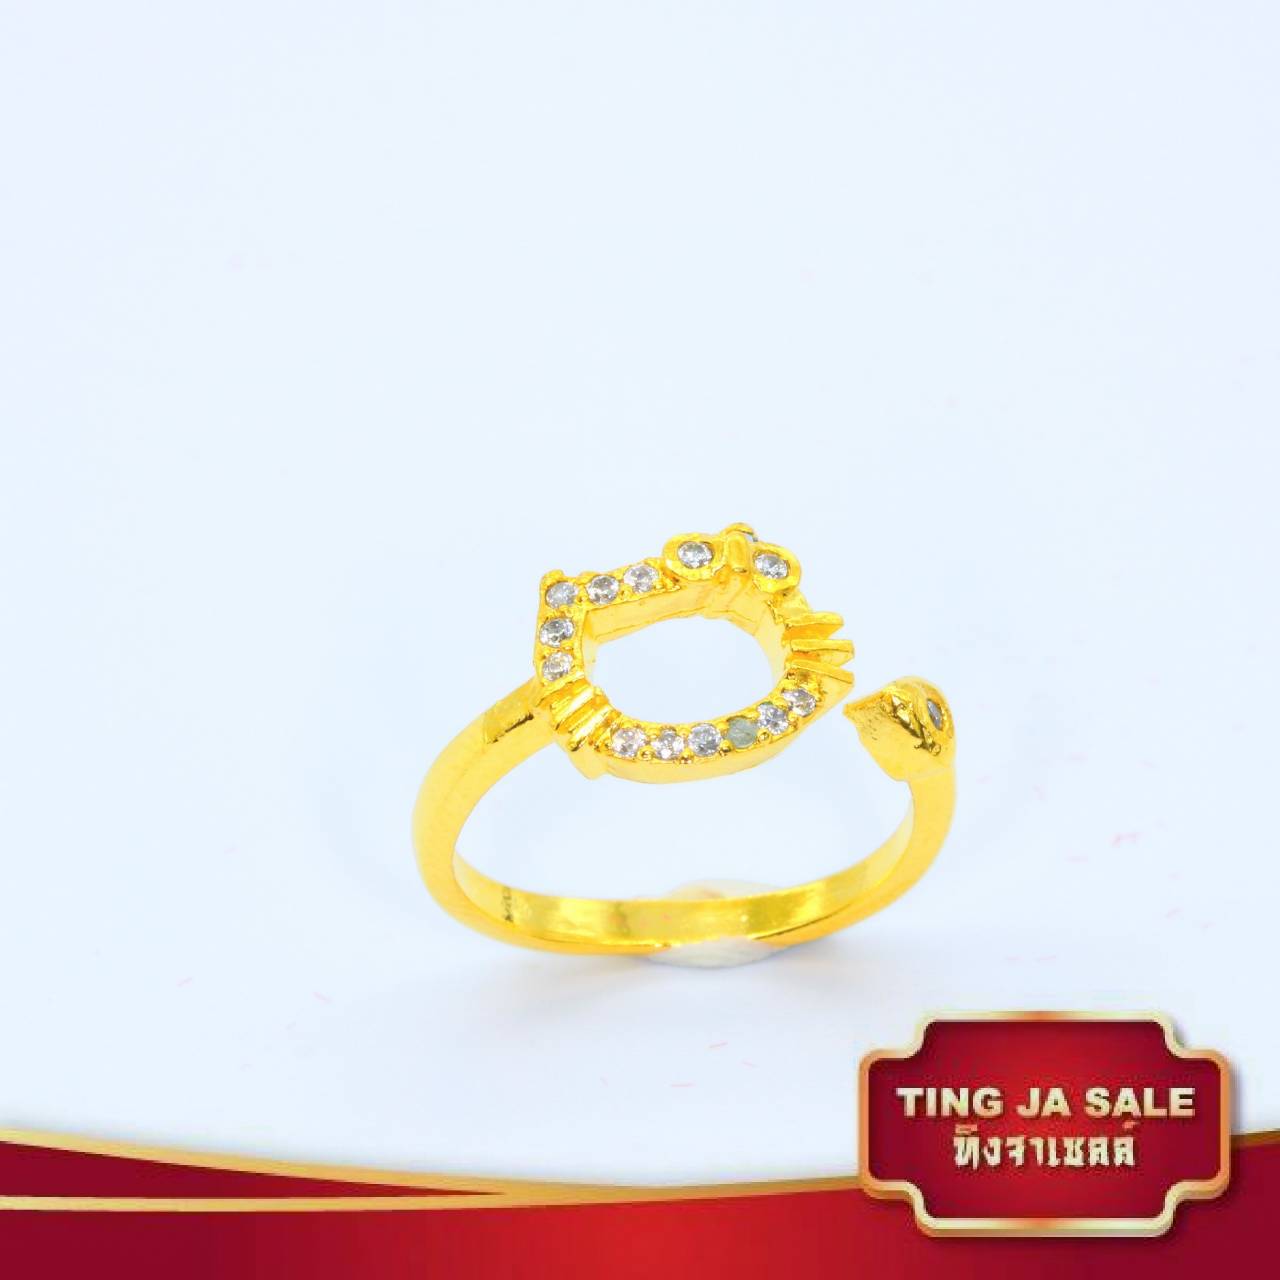 แหวนชูดีไซน์คลาสสิค ประดับเพชร ปรับขนาดได้ แหวนผู้หญิง แหวนคู่ แหวนคู่รัก เครื่องประดับ สินค้าขายดีพร้อมส่ง